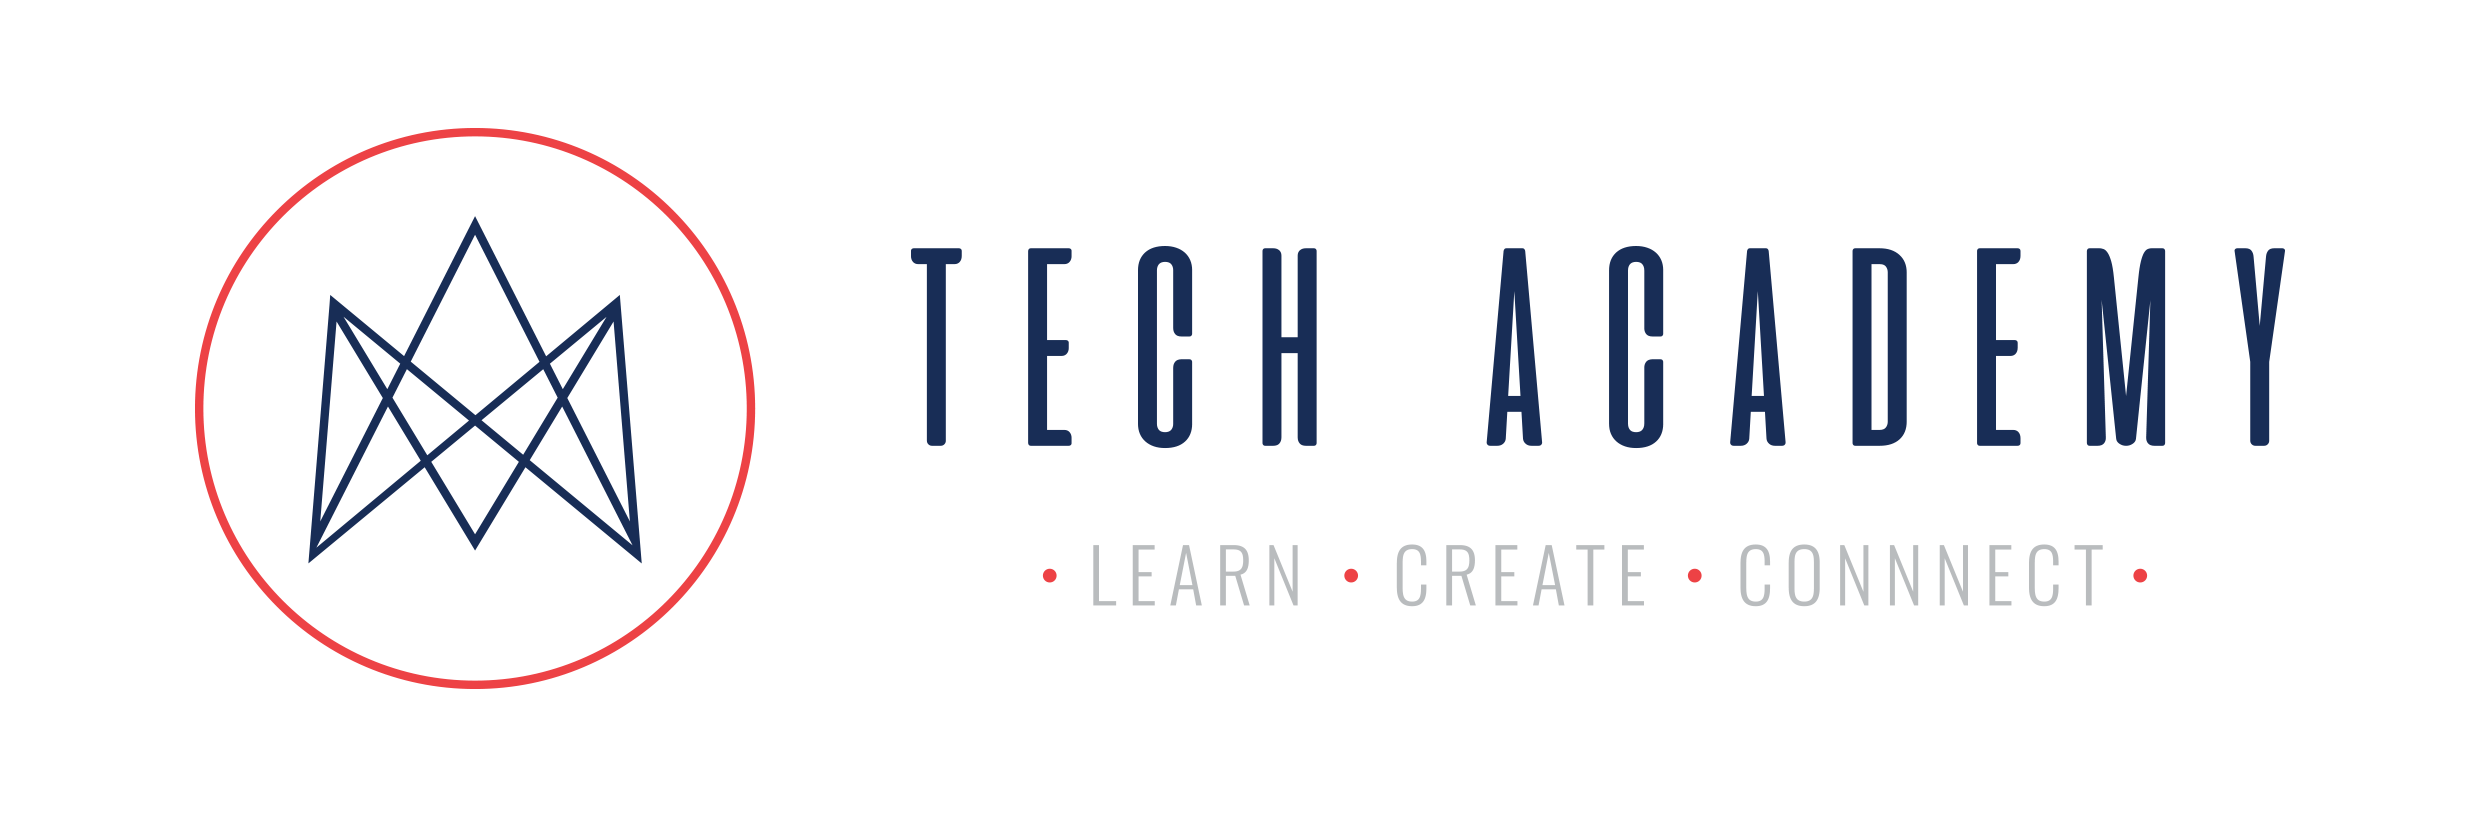 Tech Academy Logo transparent